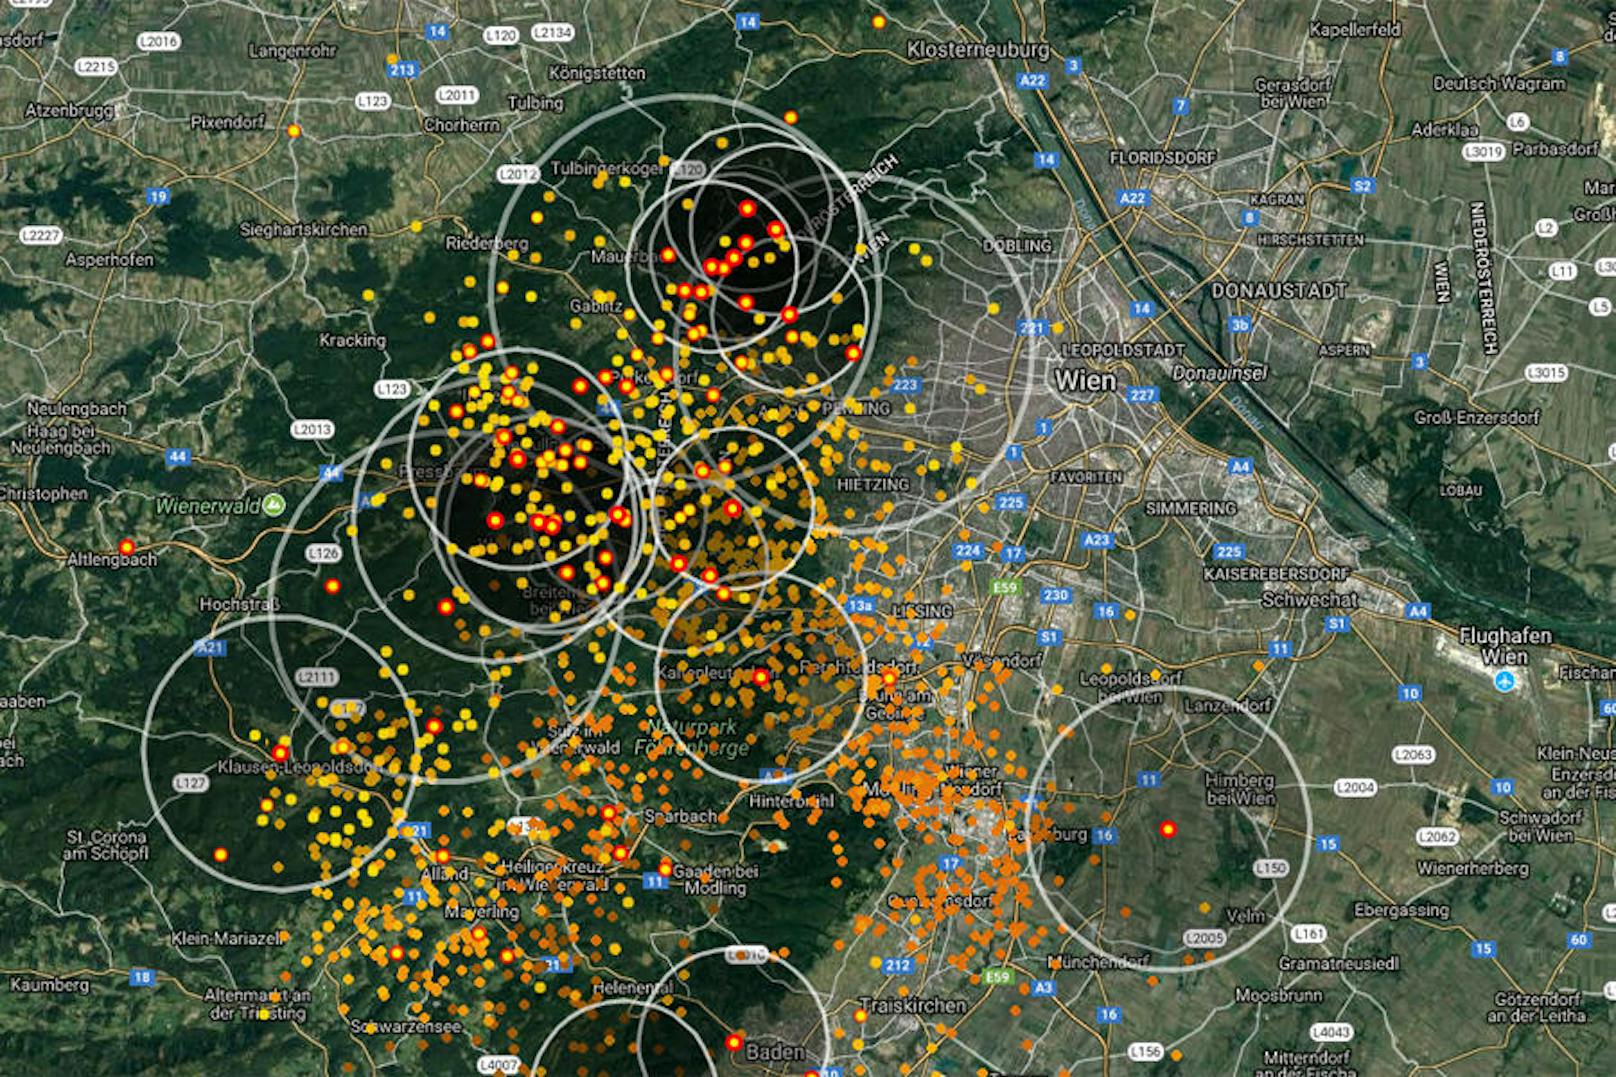 Gegen 19.00 Uhr wurden im Raum Wien rund 100 Blitze pro Minute verzeichnet. Das Blitzradar zeigt den Verlauf der Gewitterzellen. Je dünkler ein Punkt, desto länger liegt die Entladung zurück.